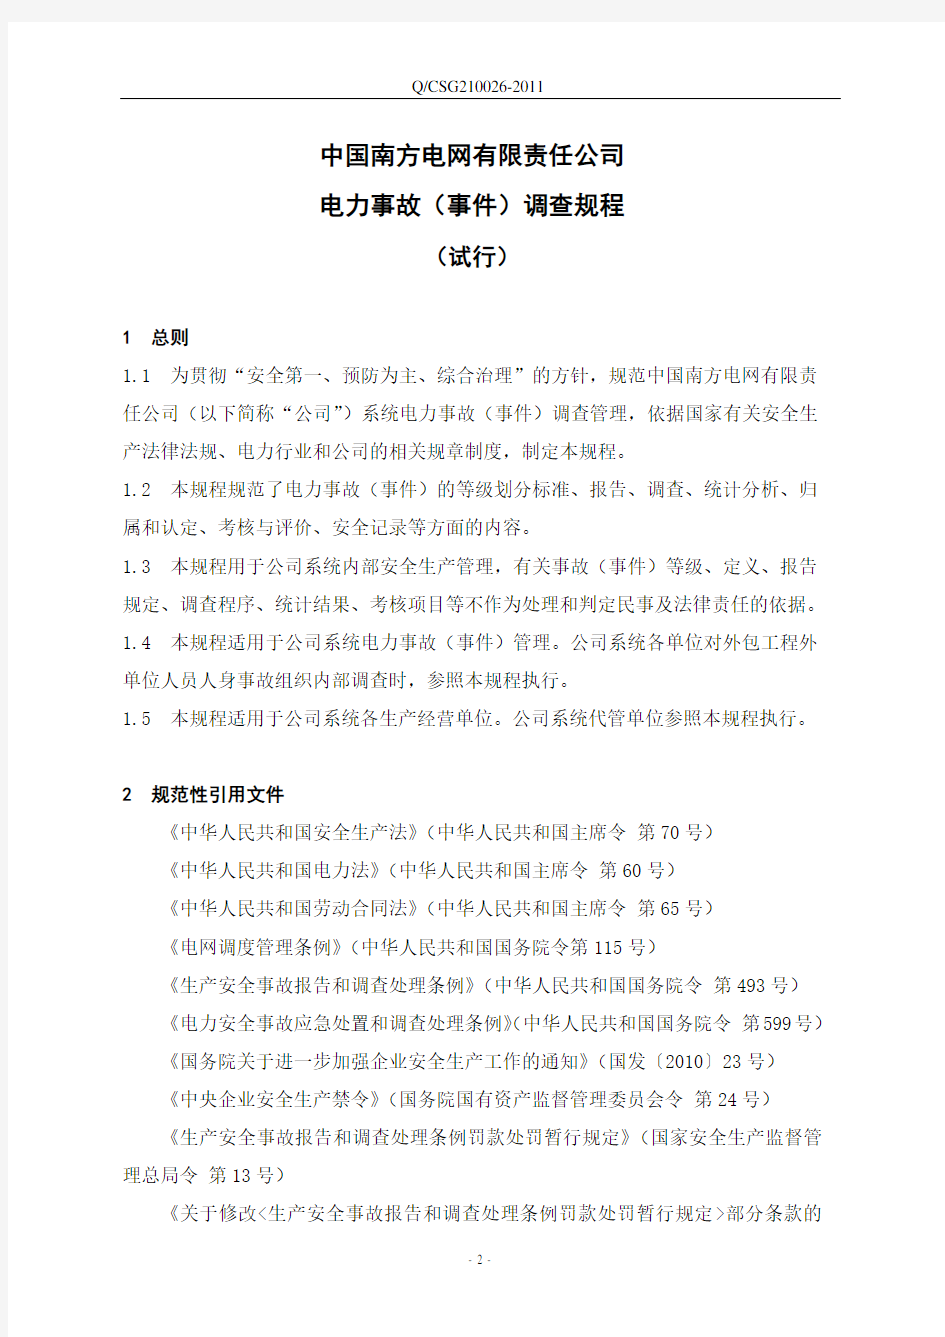 《中国南方电网有限责任公司电力事故(事件)调查规程(试行)》